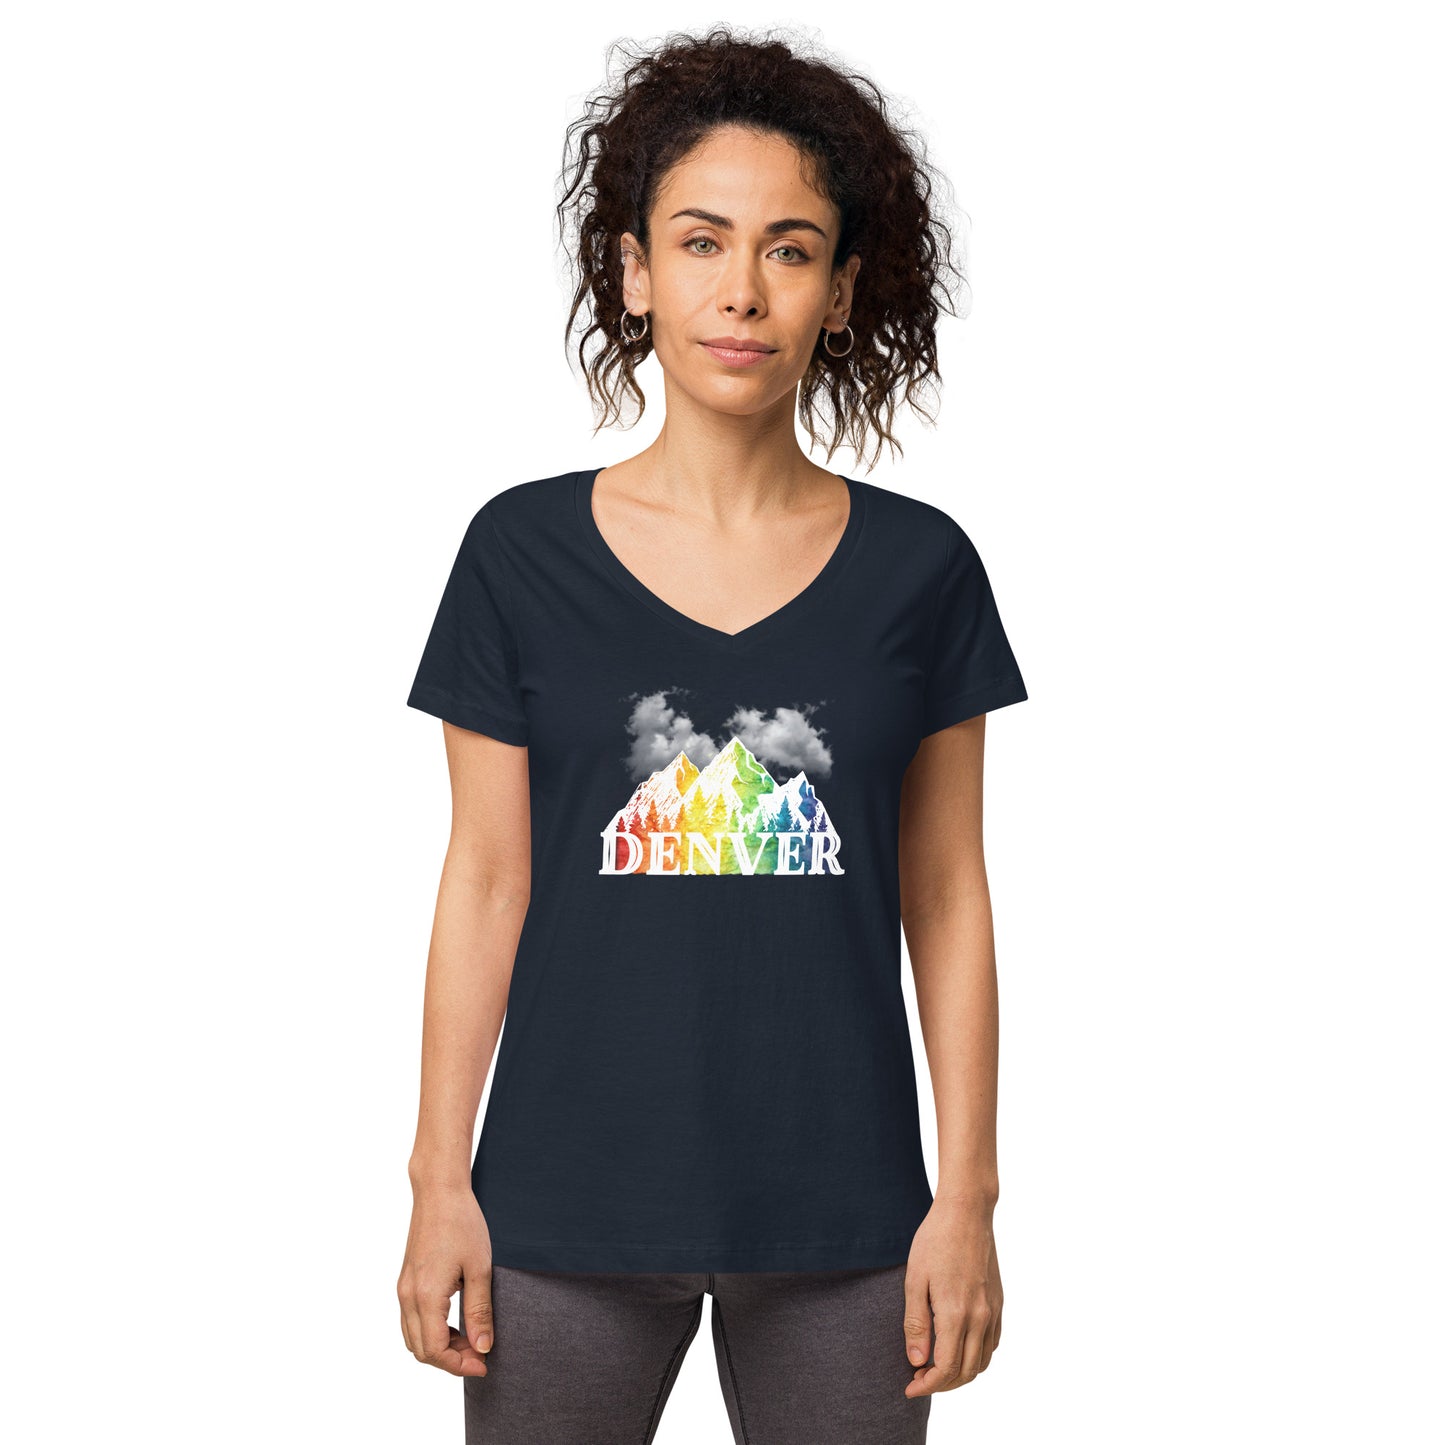 Denver Pride - Women’s fitted v-neck t-shirt